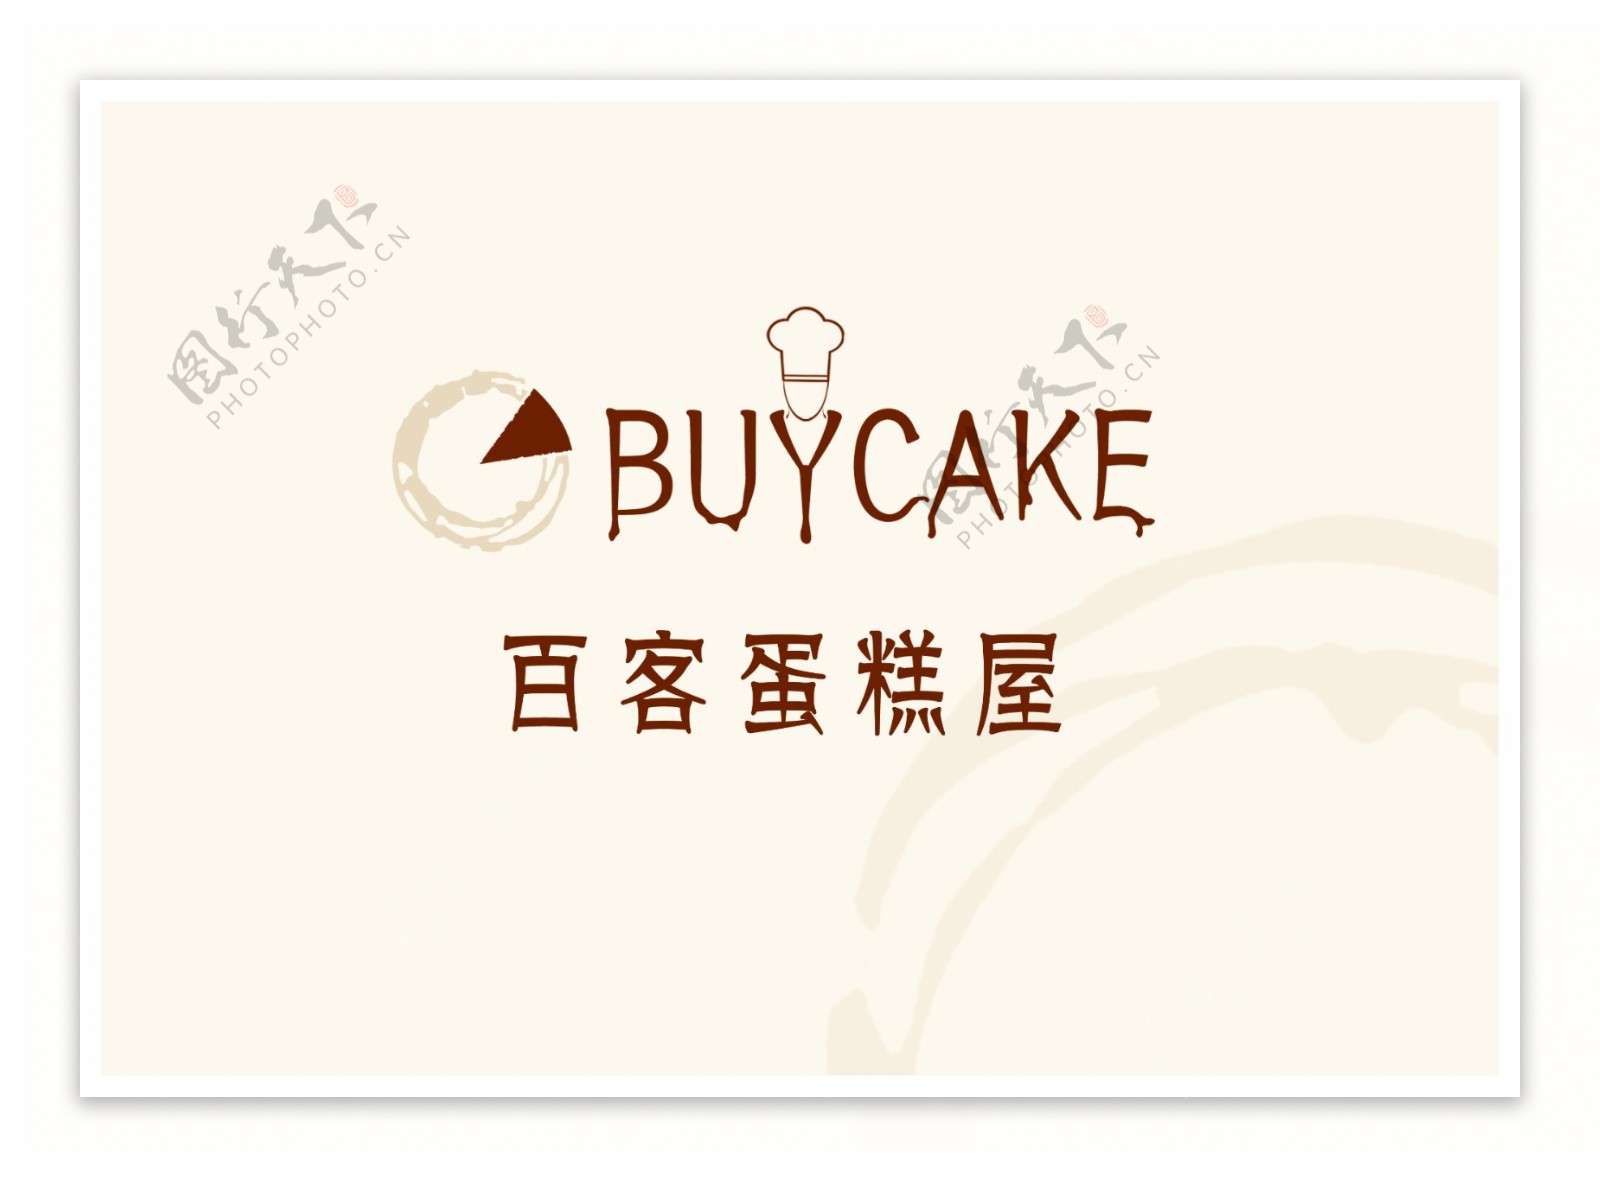 蛋糕屋logo图片